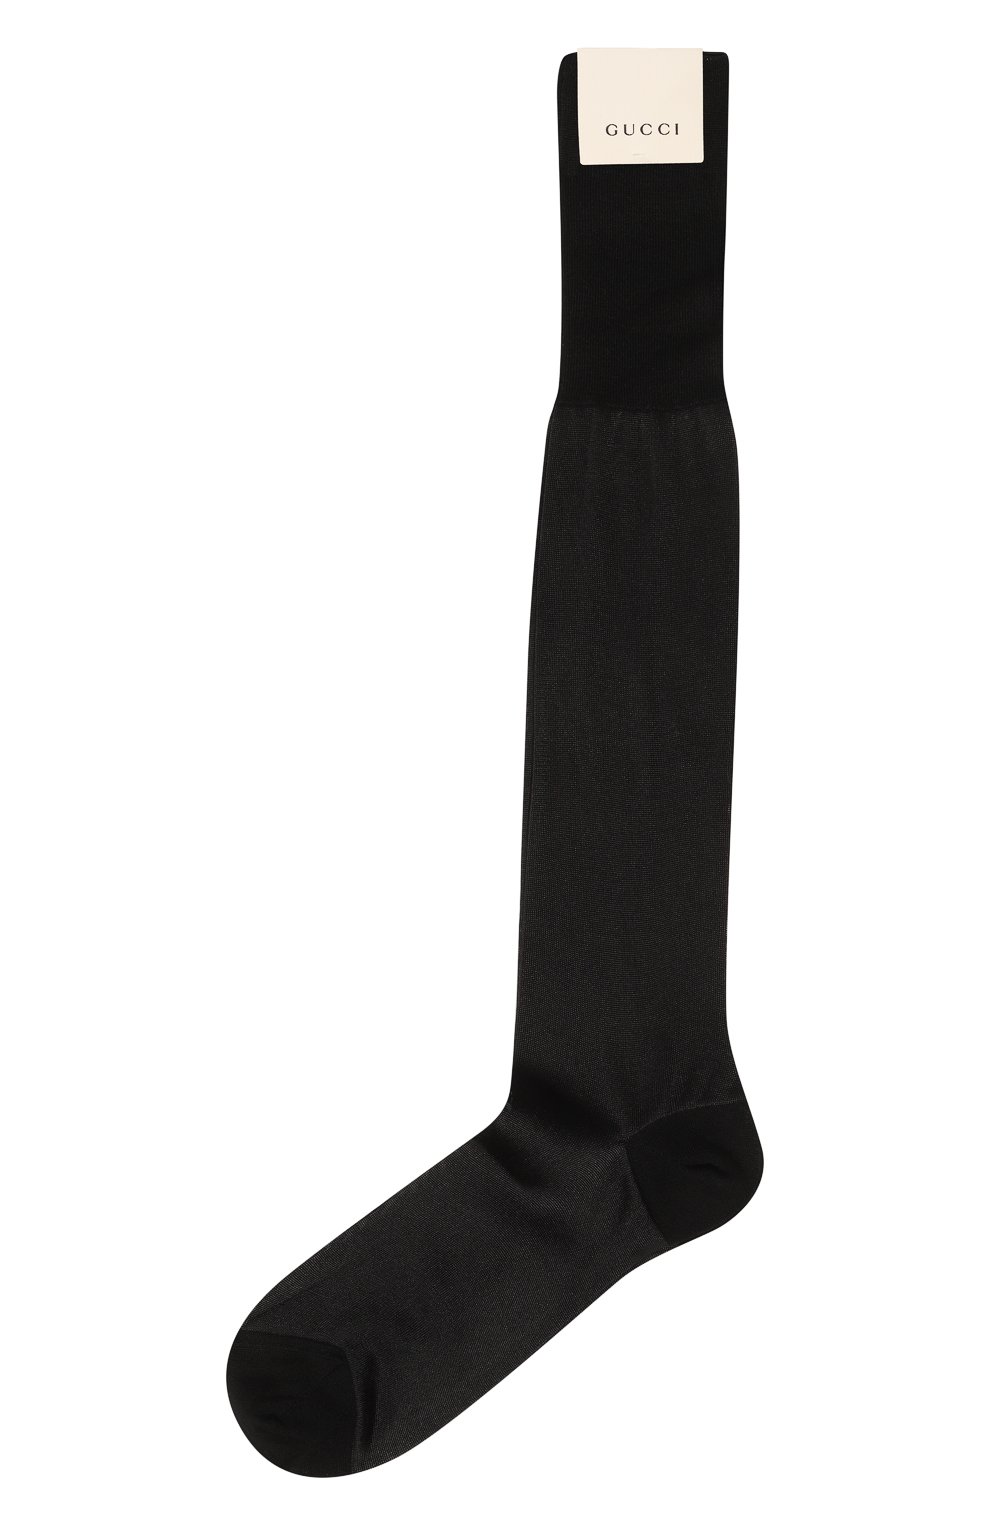 Женские хлопковые носки GUCCI черного цвета, арт. 563235 4G483 | Фото 1 (Материал внешний: Хлопок)